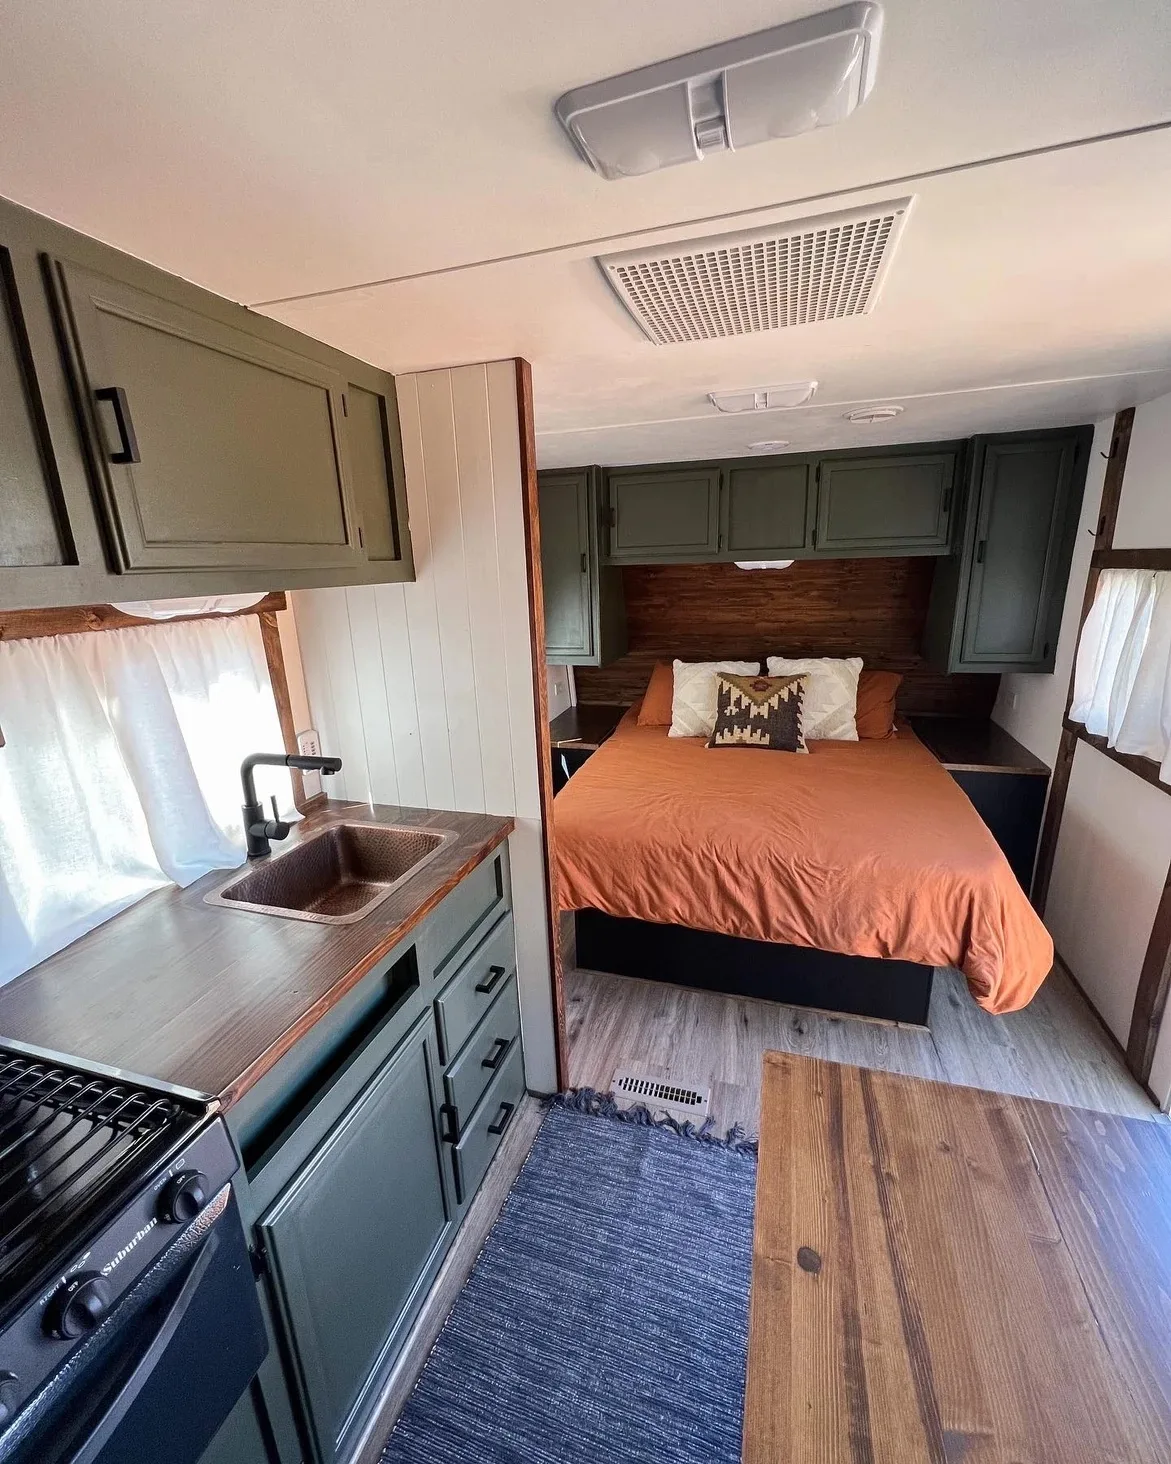 bedroom in renovated camper